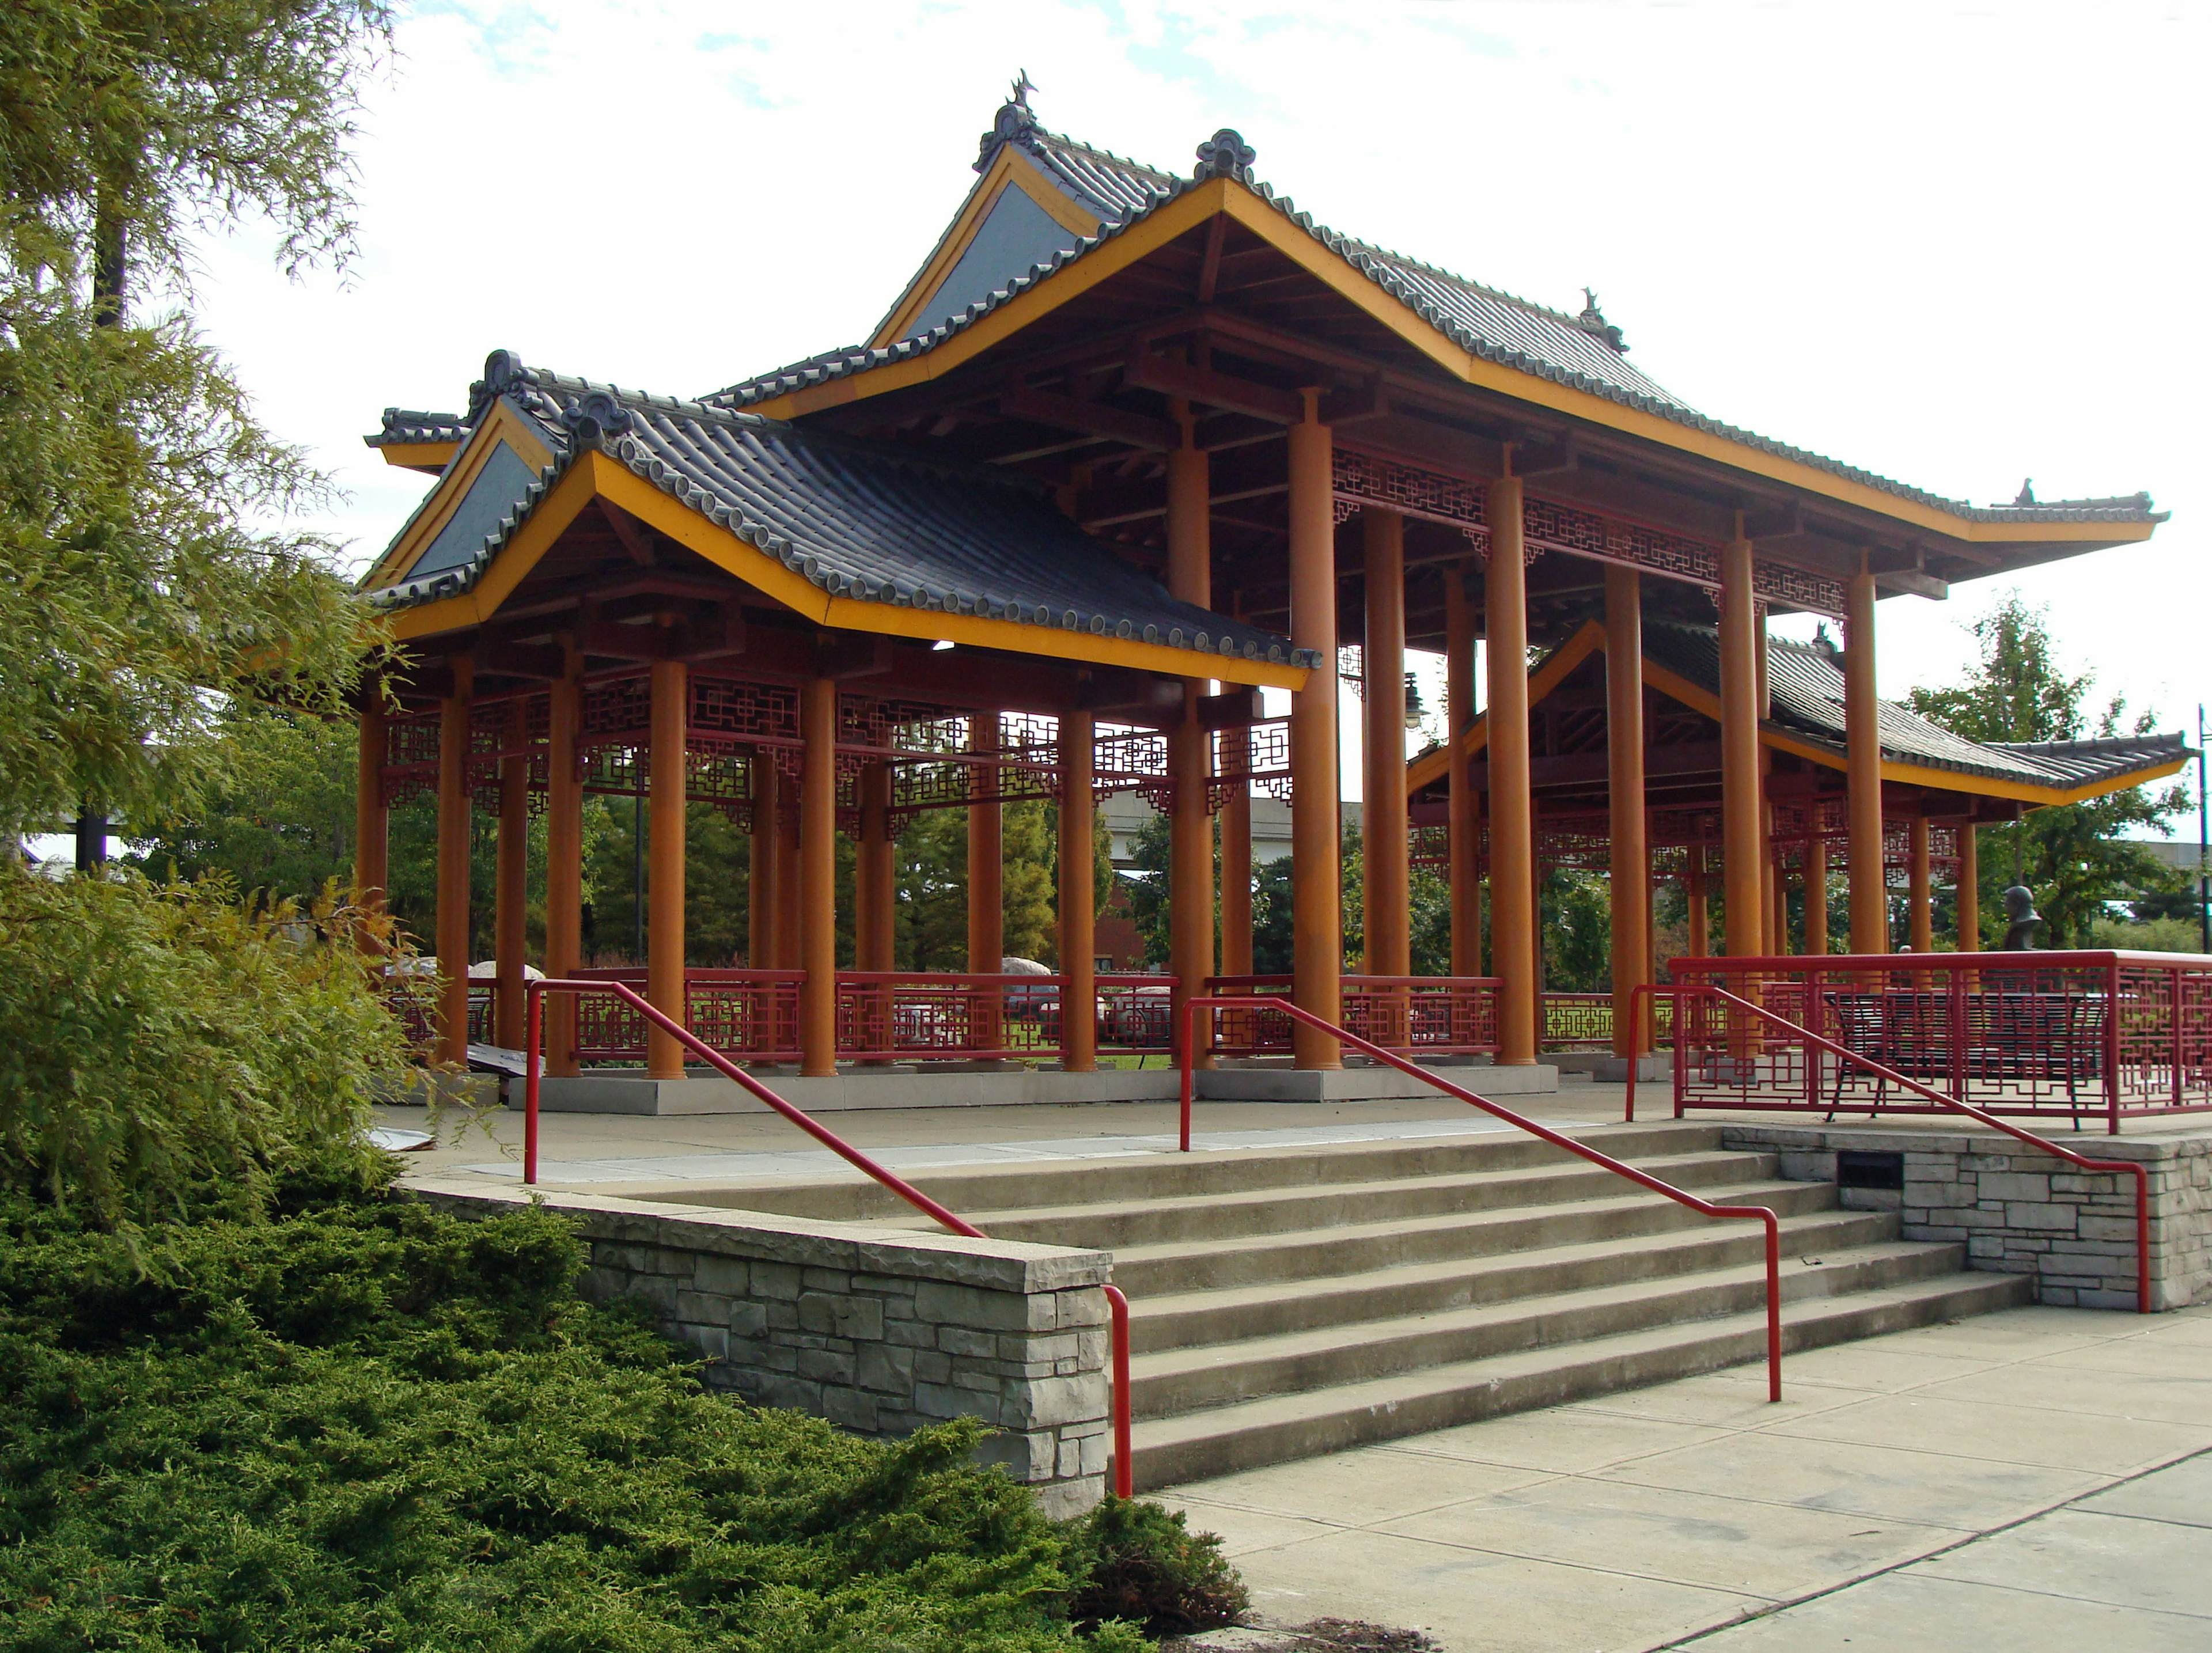  Ping Tom Memorial Park